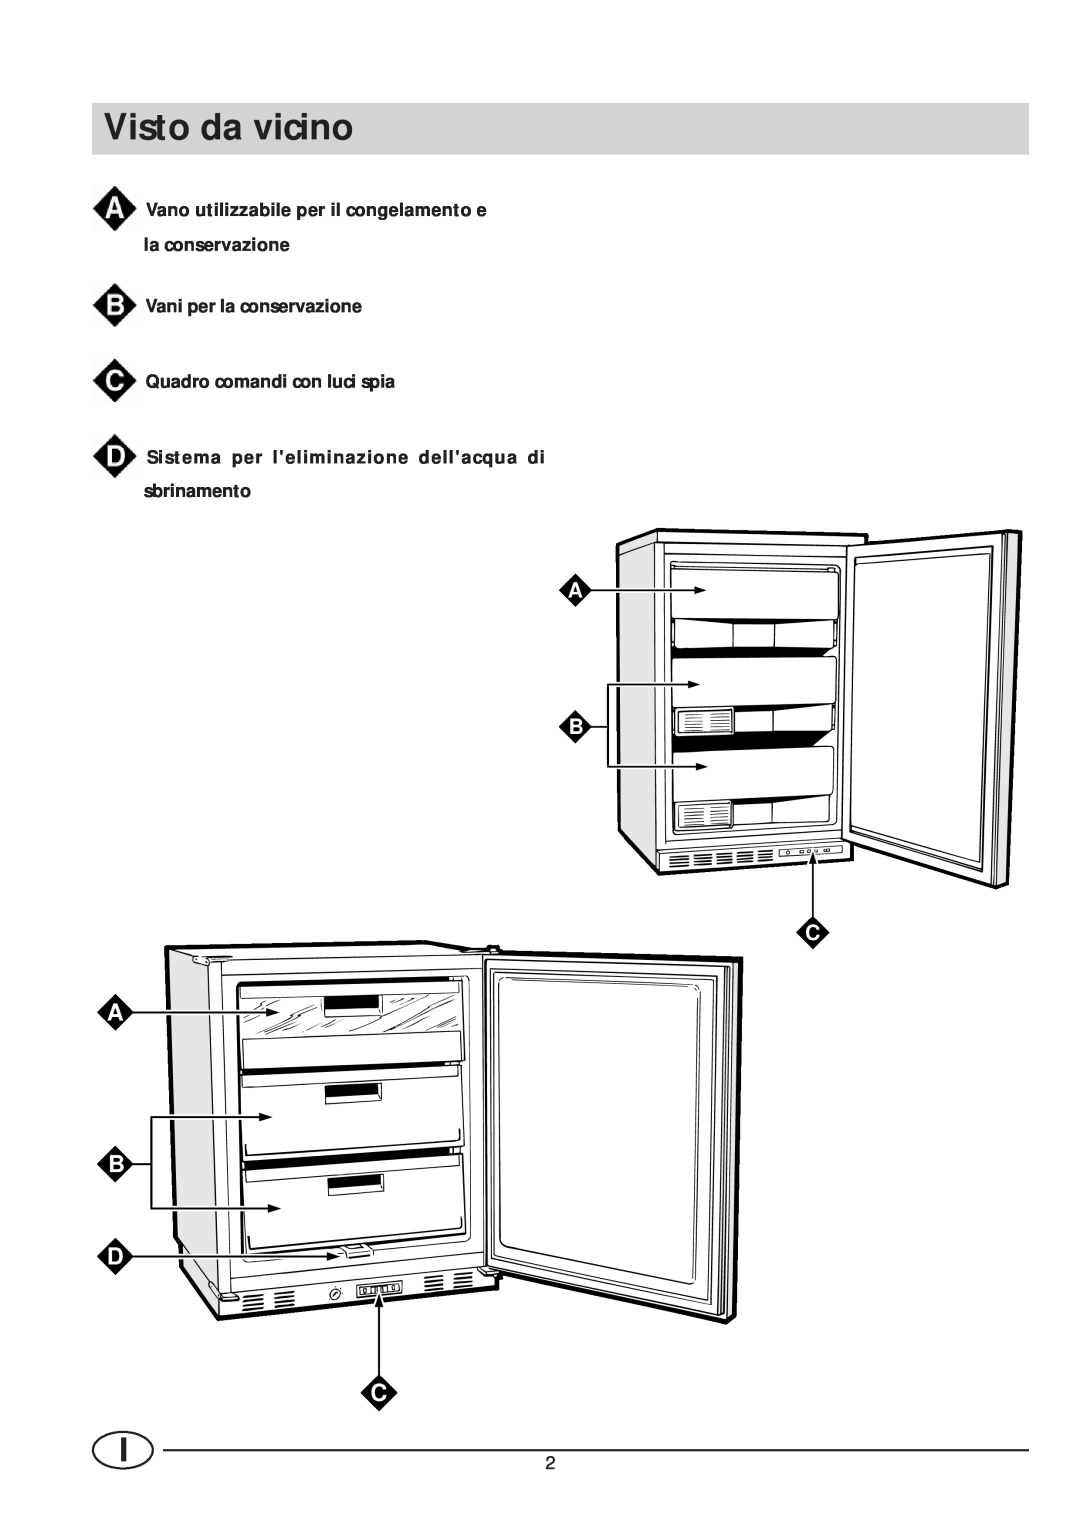 Smeg VR105NE1 manual Visto da vicino, A B D C, A B C, Vano utilizzabile per il congelamento e la conservazione 